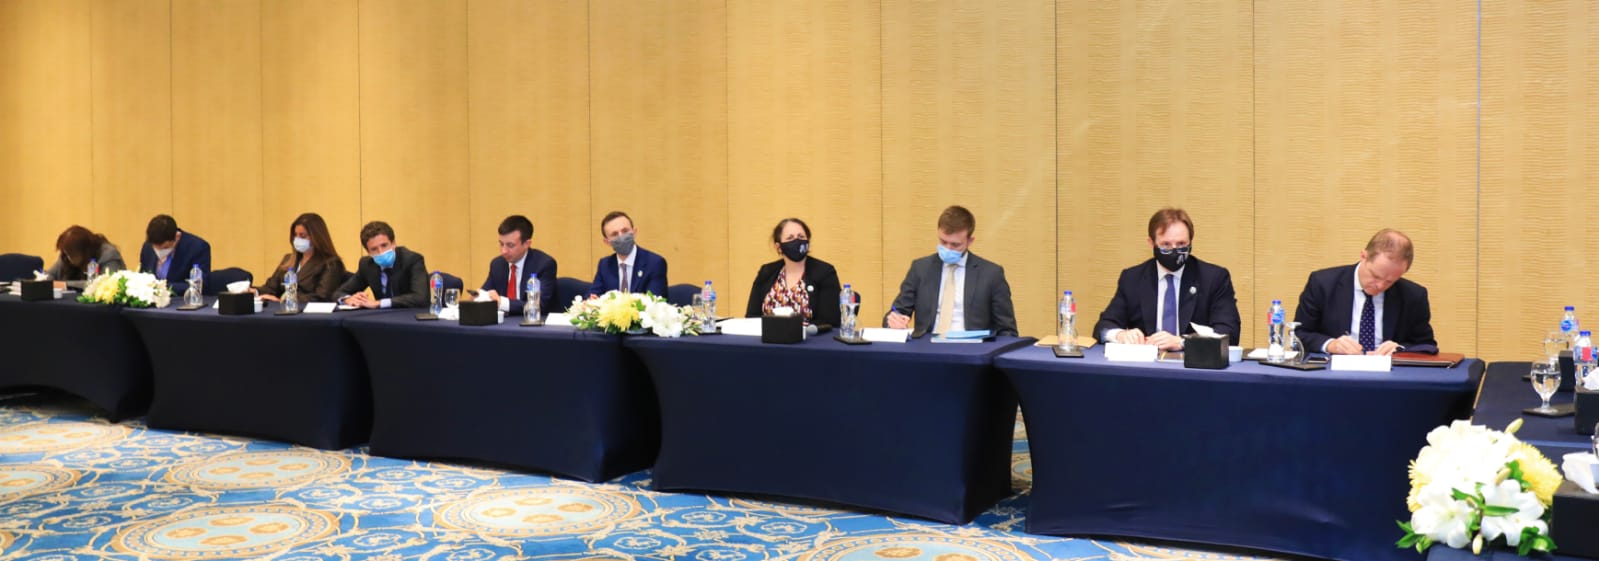 وزيرة التعاون الدولي: مصر لديها تجربة رائدة في مشروعات تنموية تواجه تداعيات التغيرات المناخية

